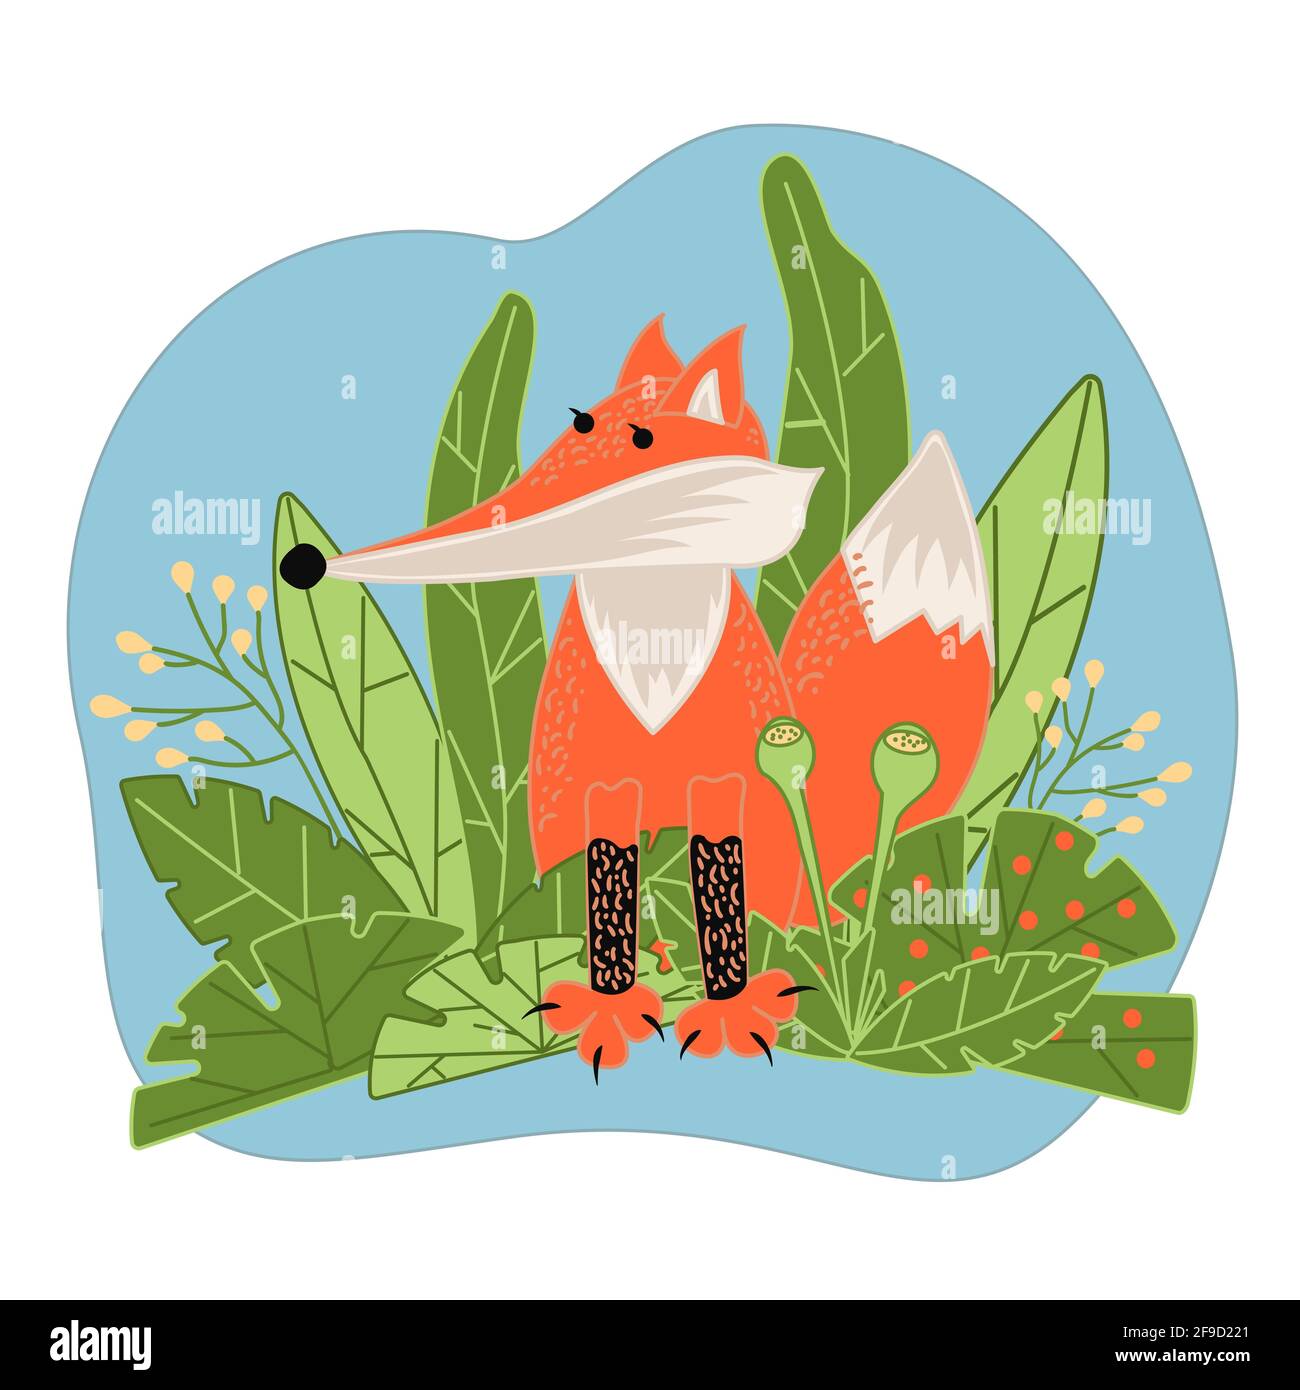 Le renard de dessin animé se trouve au milieu de l'herbe verte et des buissons. Illustration vectorielle d'un animal qui vit dans la forêt. Concept écologique de style plat. Illustration de Vecteur